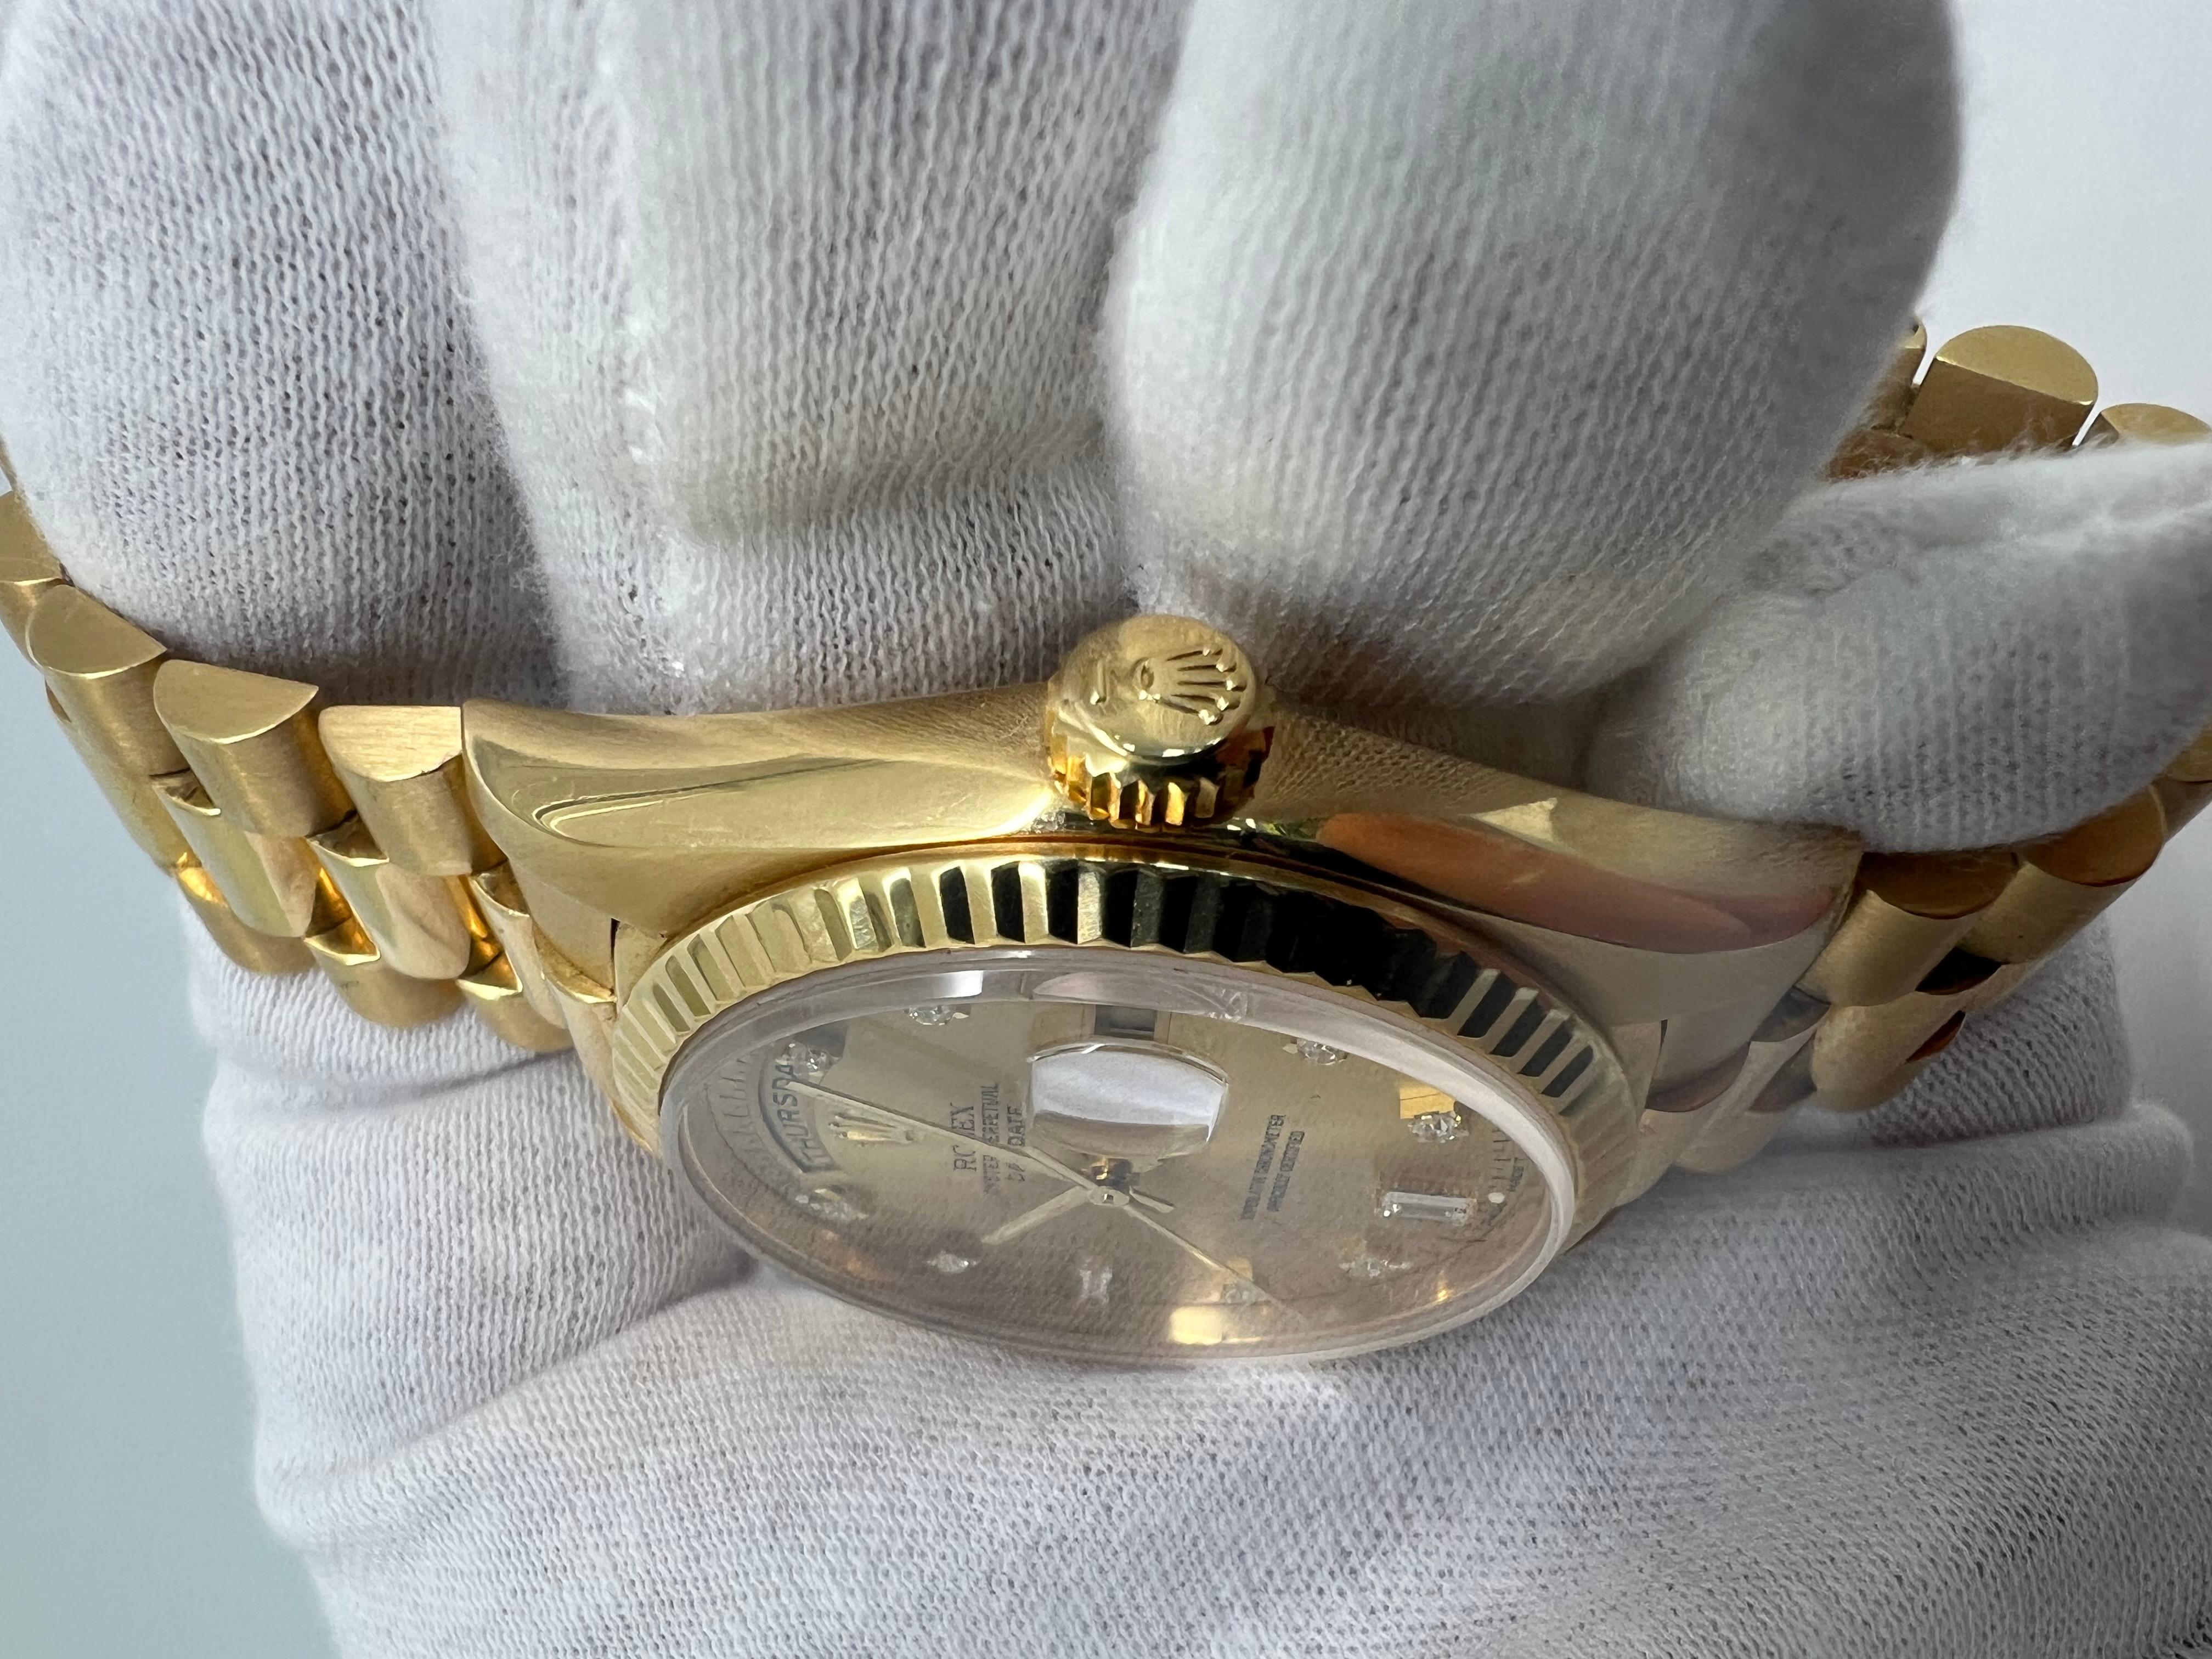 Rolex Daydate 36mm Diamant-Zifferblatt-Fabrik-Uhr

alle Original-Roségold-Teile

Fabrik Diamant Baguette Zifferblatt

Doppeltes Schnellverfahren!

festes Armband

Ausgezeichneter Zustand 

kommt mit Rolex Box und 2 Jahren Garantie auf das